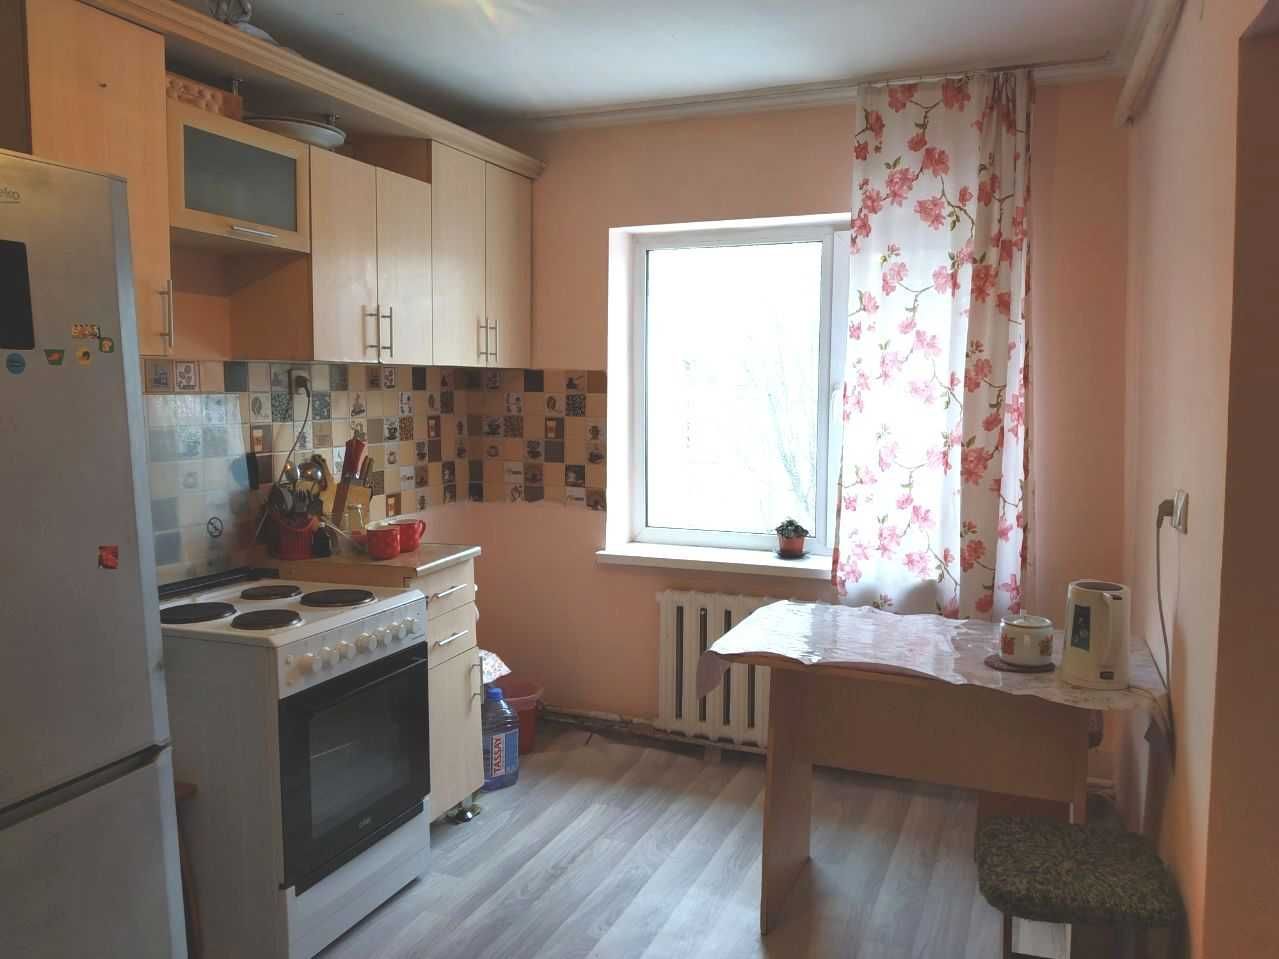 Продается 4-комнатный кирпичный дом по улице Карбышева.